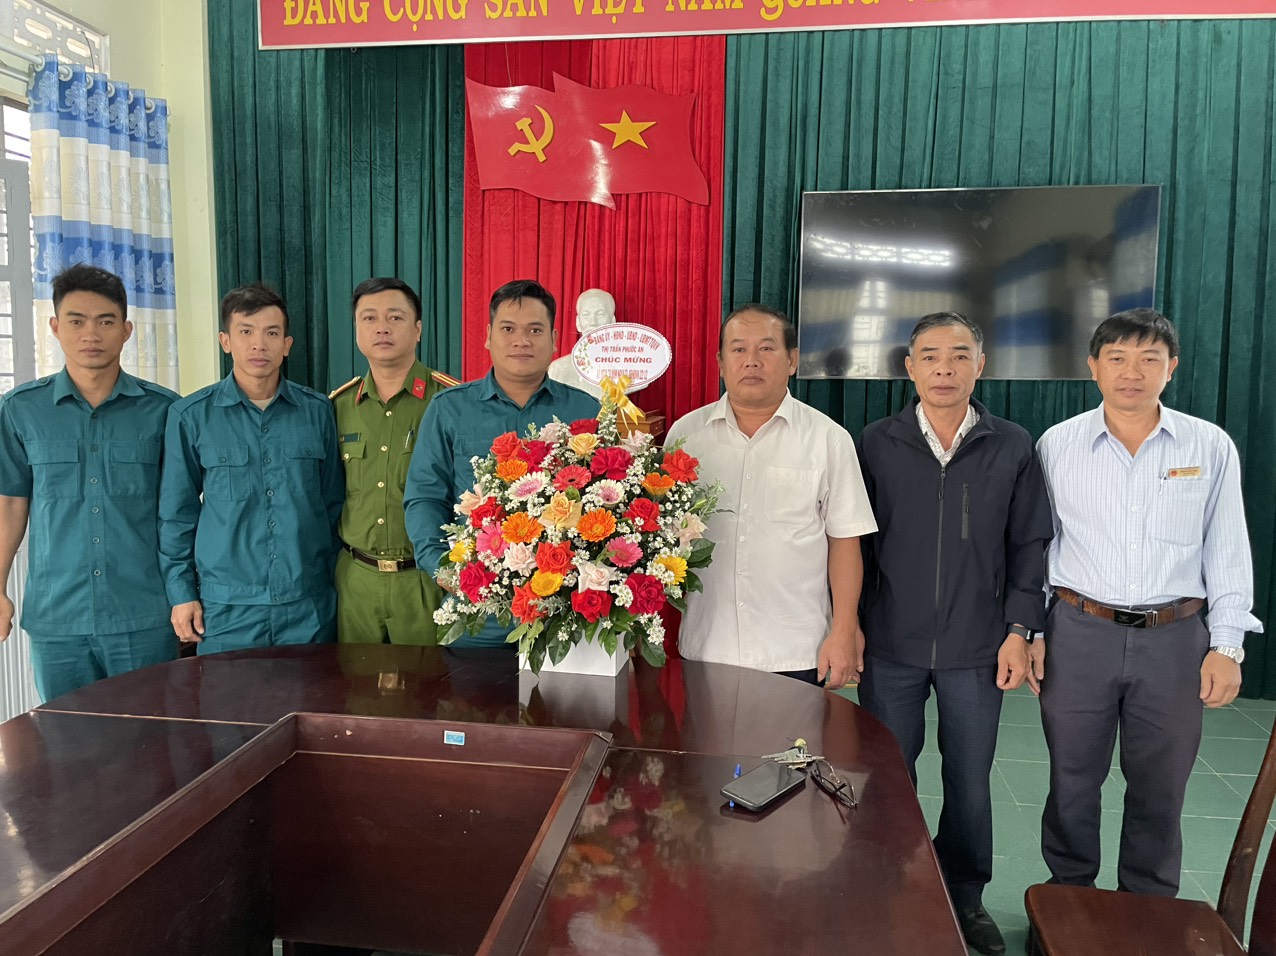 Đảng ủy-HĐND-UBND-UBMTTQVN thị trấn Phước An đã tổ chức buổi gặp mặt nhân kỷ niệm 79 năm Ngày thành lập Quân đội nhân dân Việt Nam (22/12/1944 - 22/12/2023) và 34 năm Ngày Hội Quốc phòng toàn dân (22/12/1989-22/12/2023)